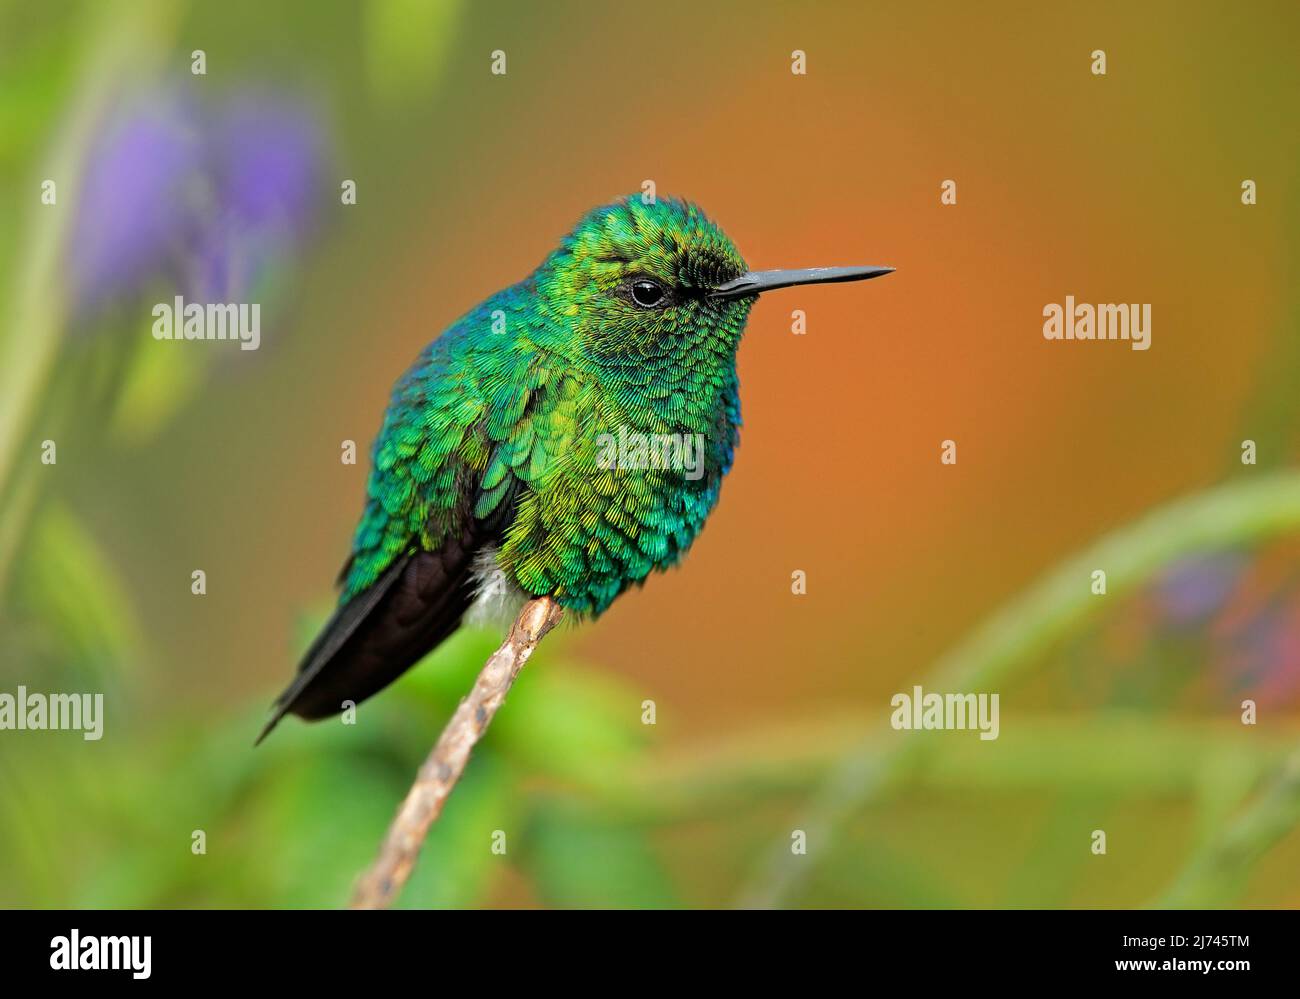 Smeraldo occidentale, Clorostilbon melanorhynchus, colibrì nella foresta tropicale della Colombia, blu un uccello verde lucido nell'habitat naturale Foto Stock